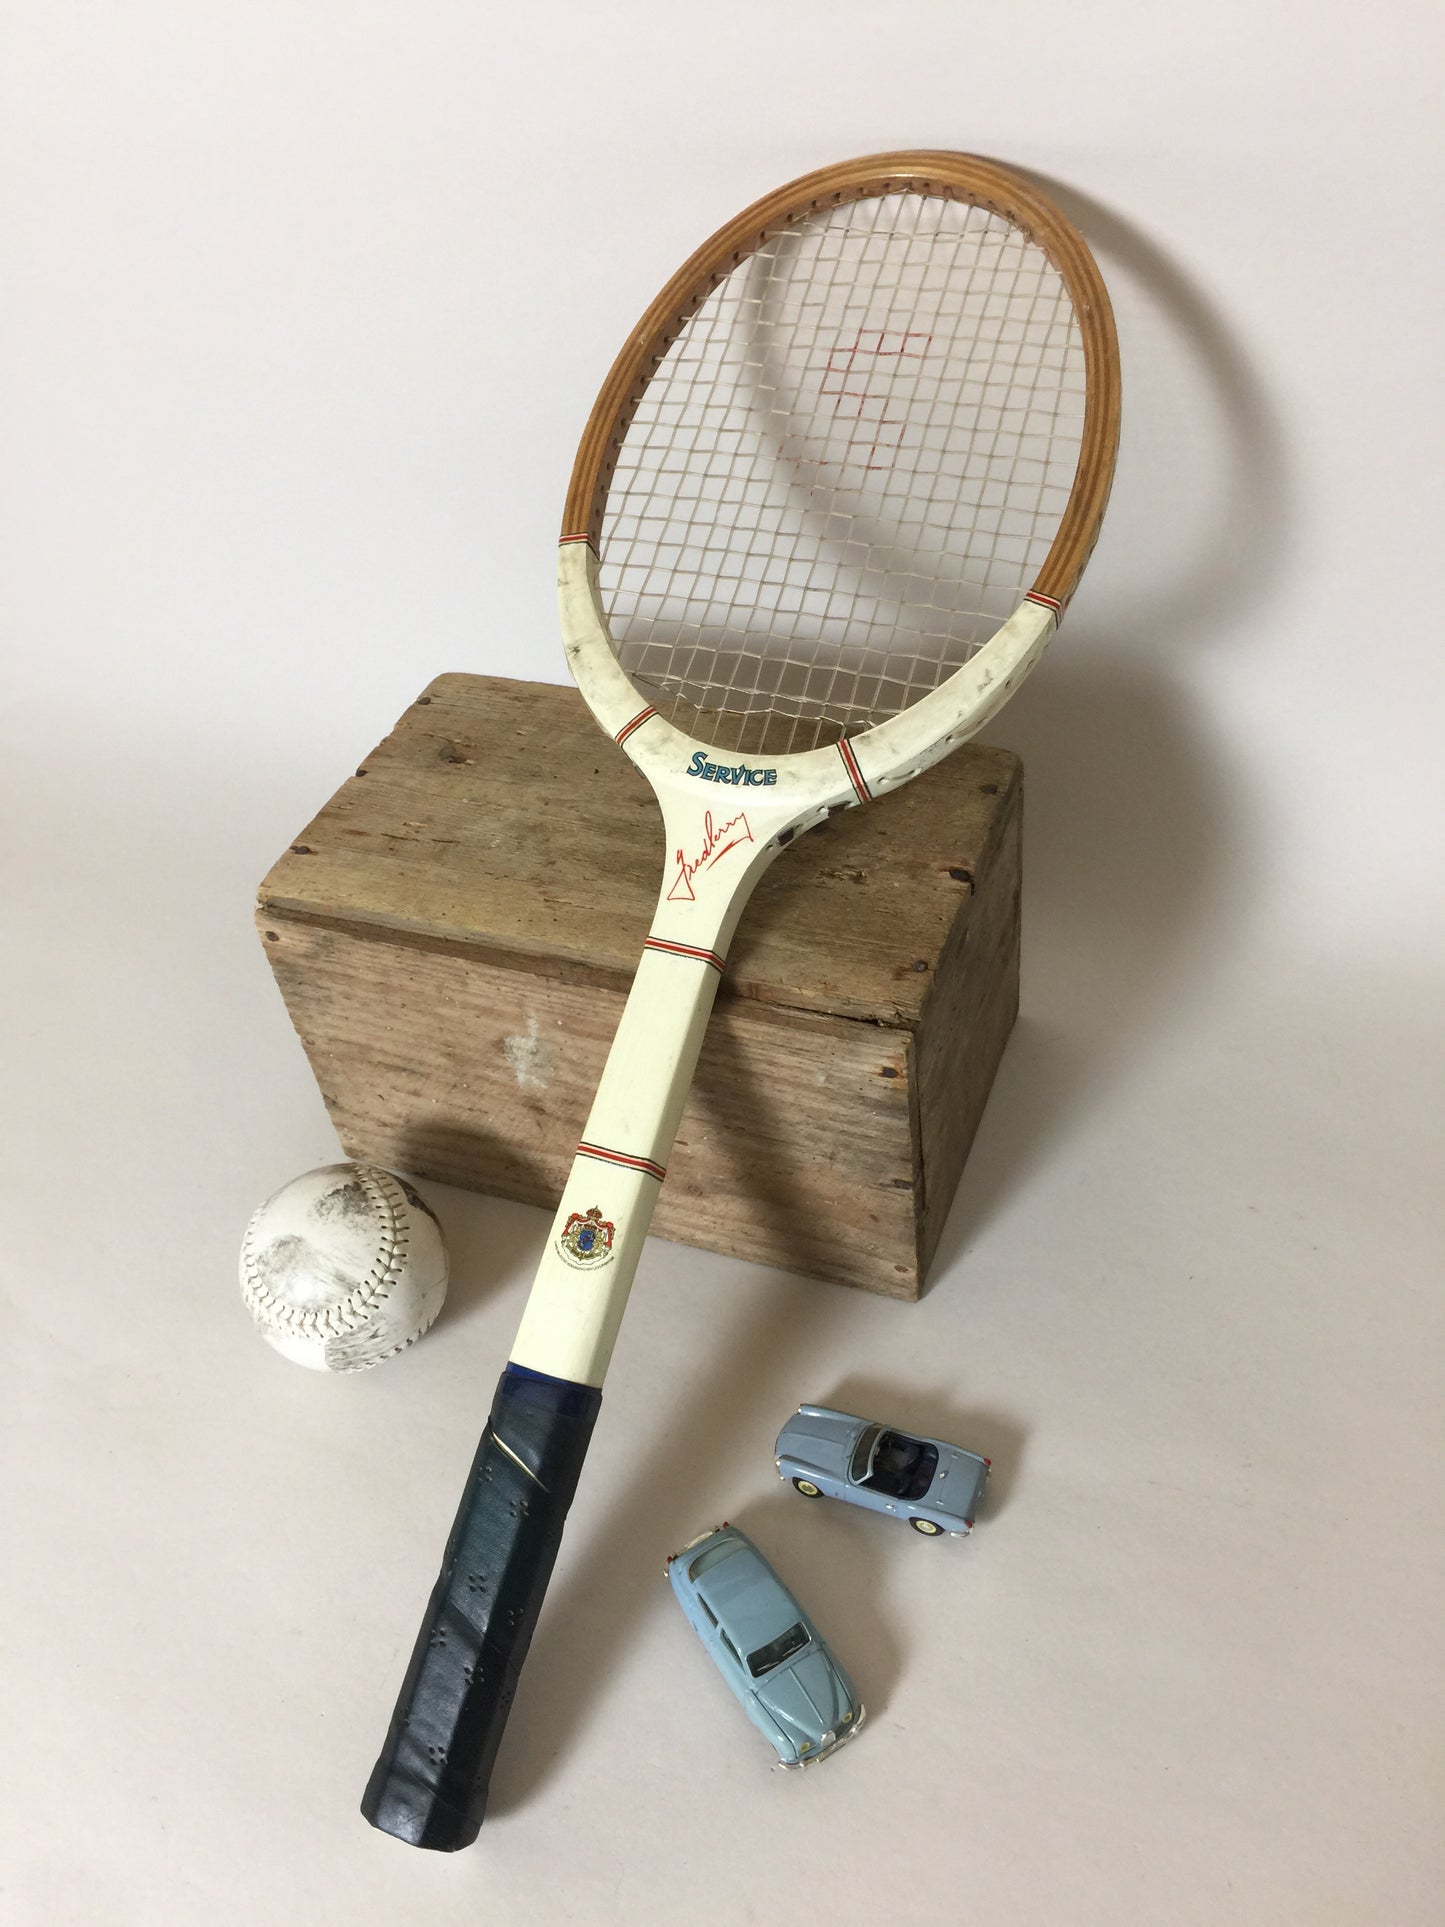 Schöner alter schwedischer Tennisschläger